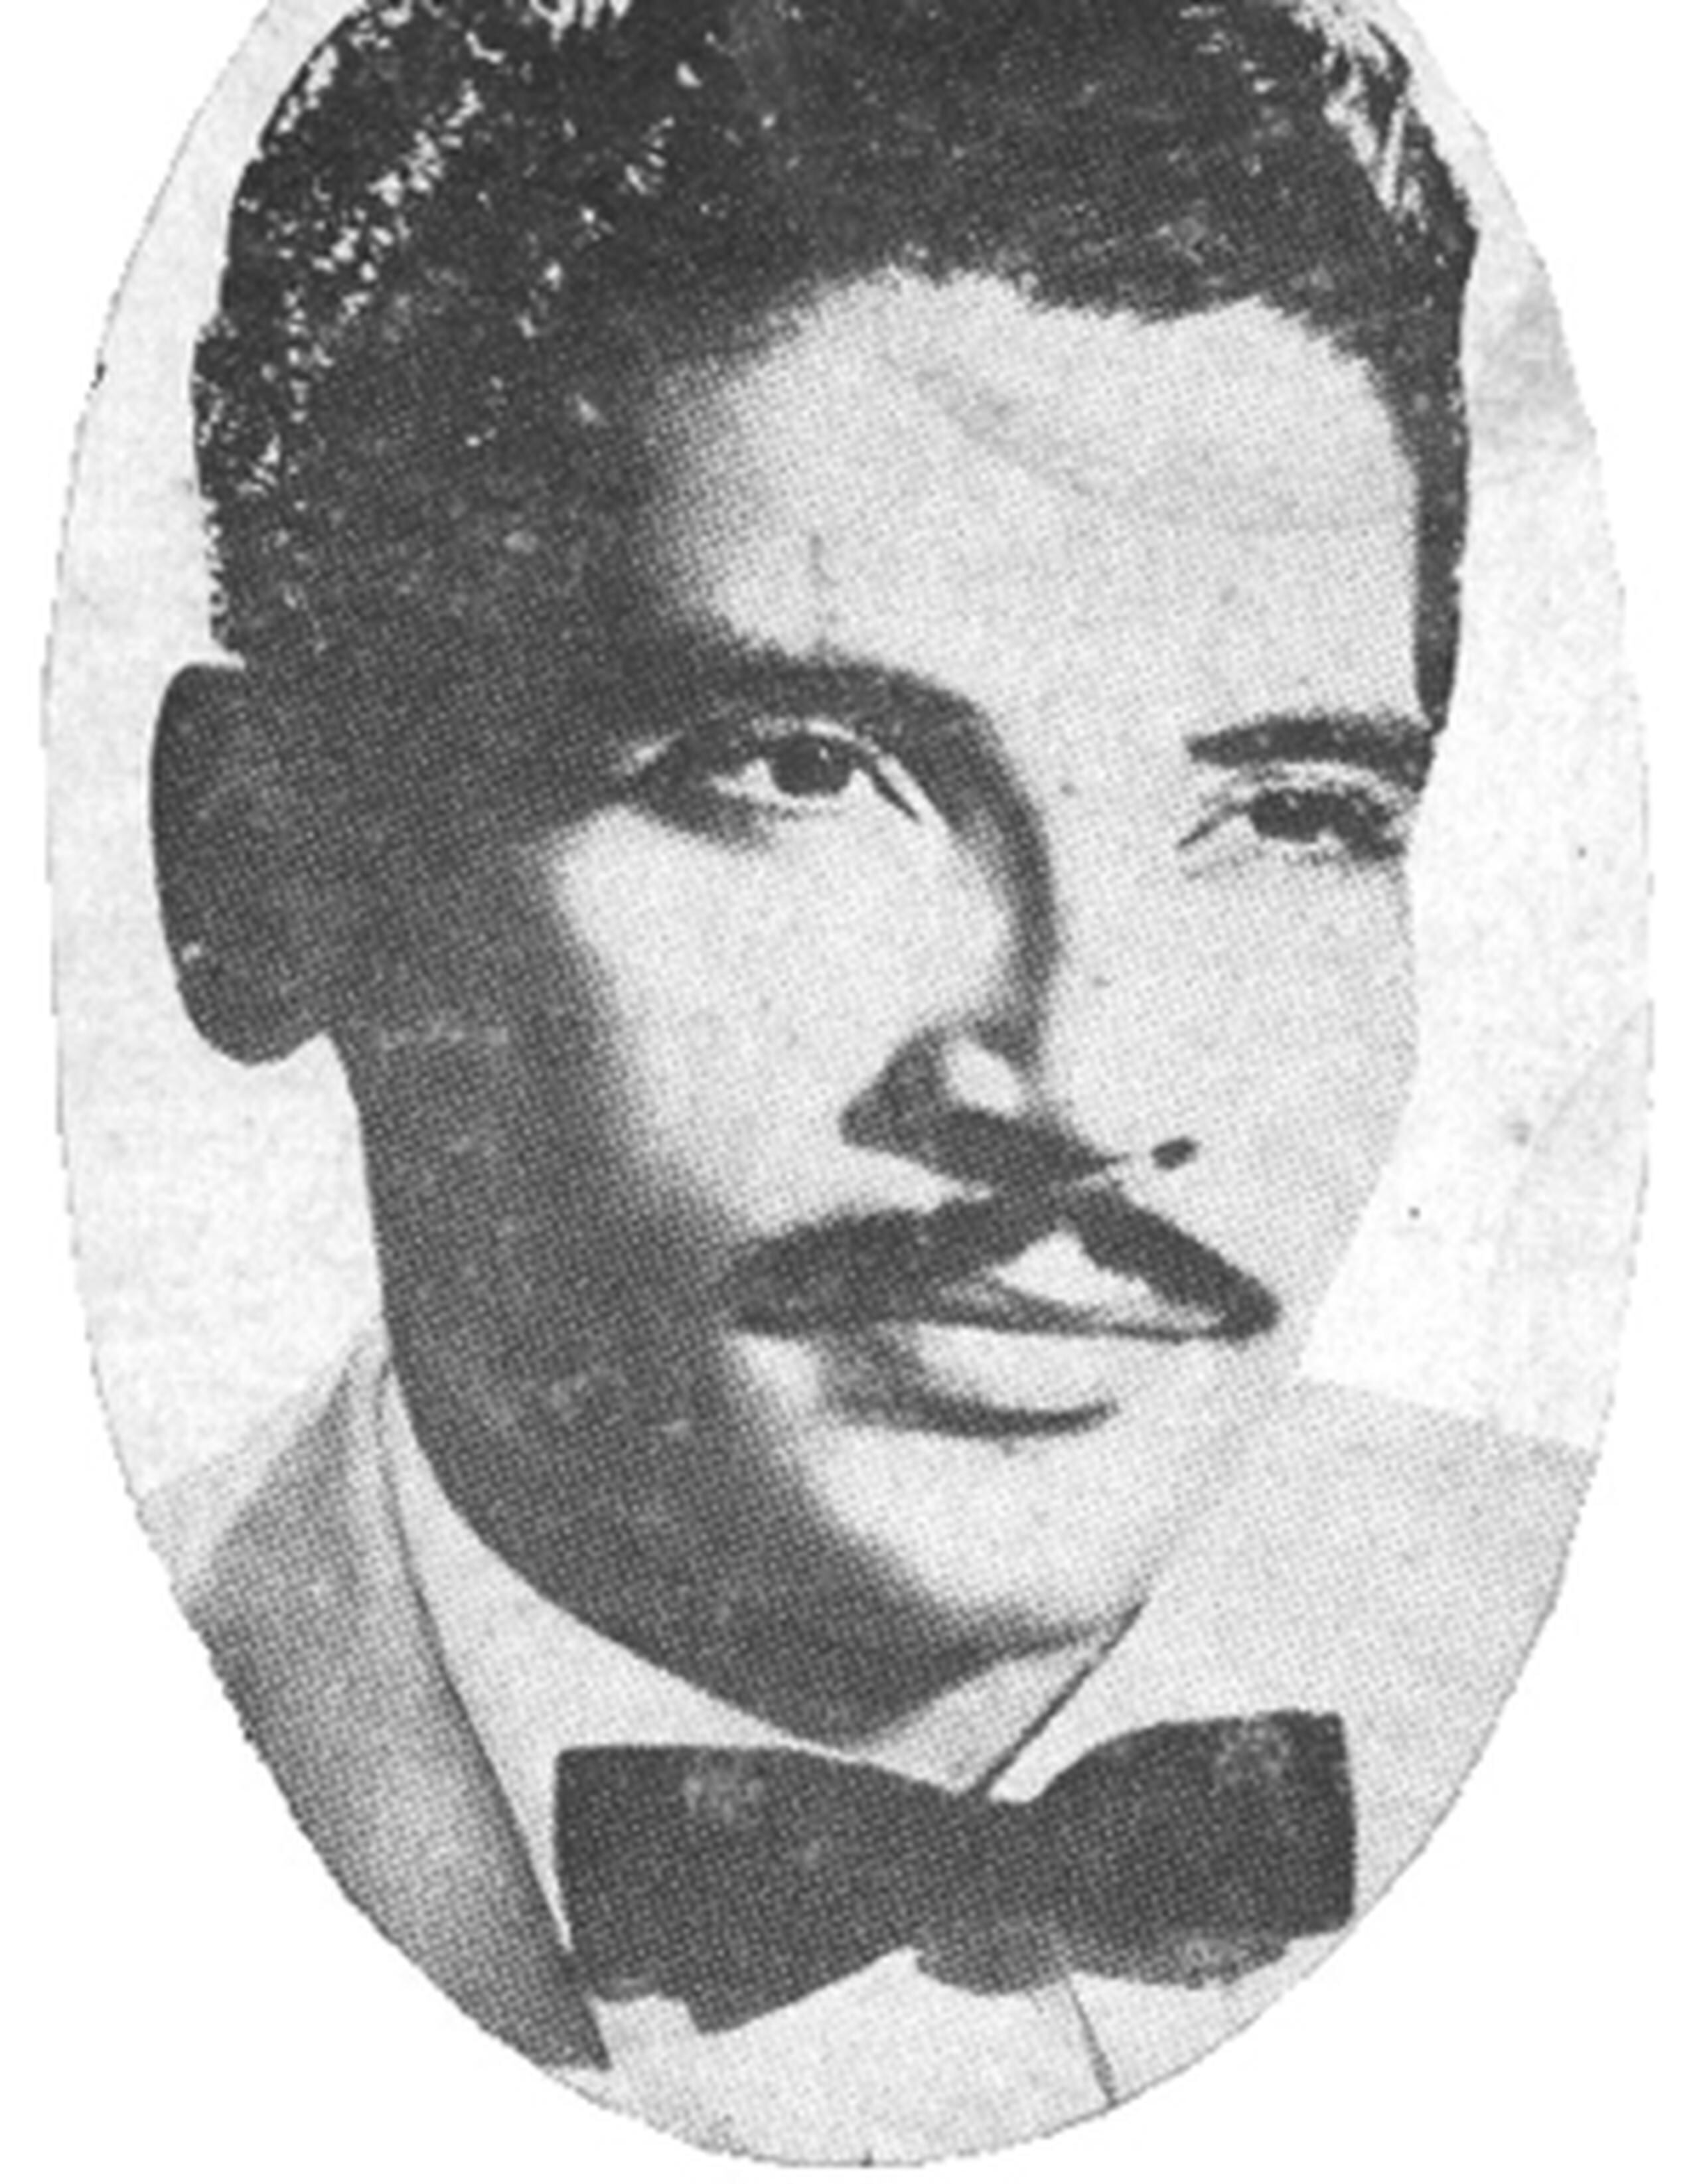 Daniel Santos grabó canciones en géneros de salsa, guaracha, guaguancó, boleros, son y hasta en otros idiomas. (Archivo)